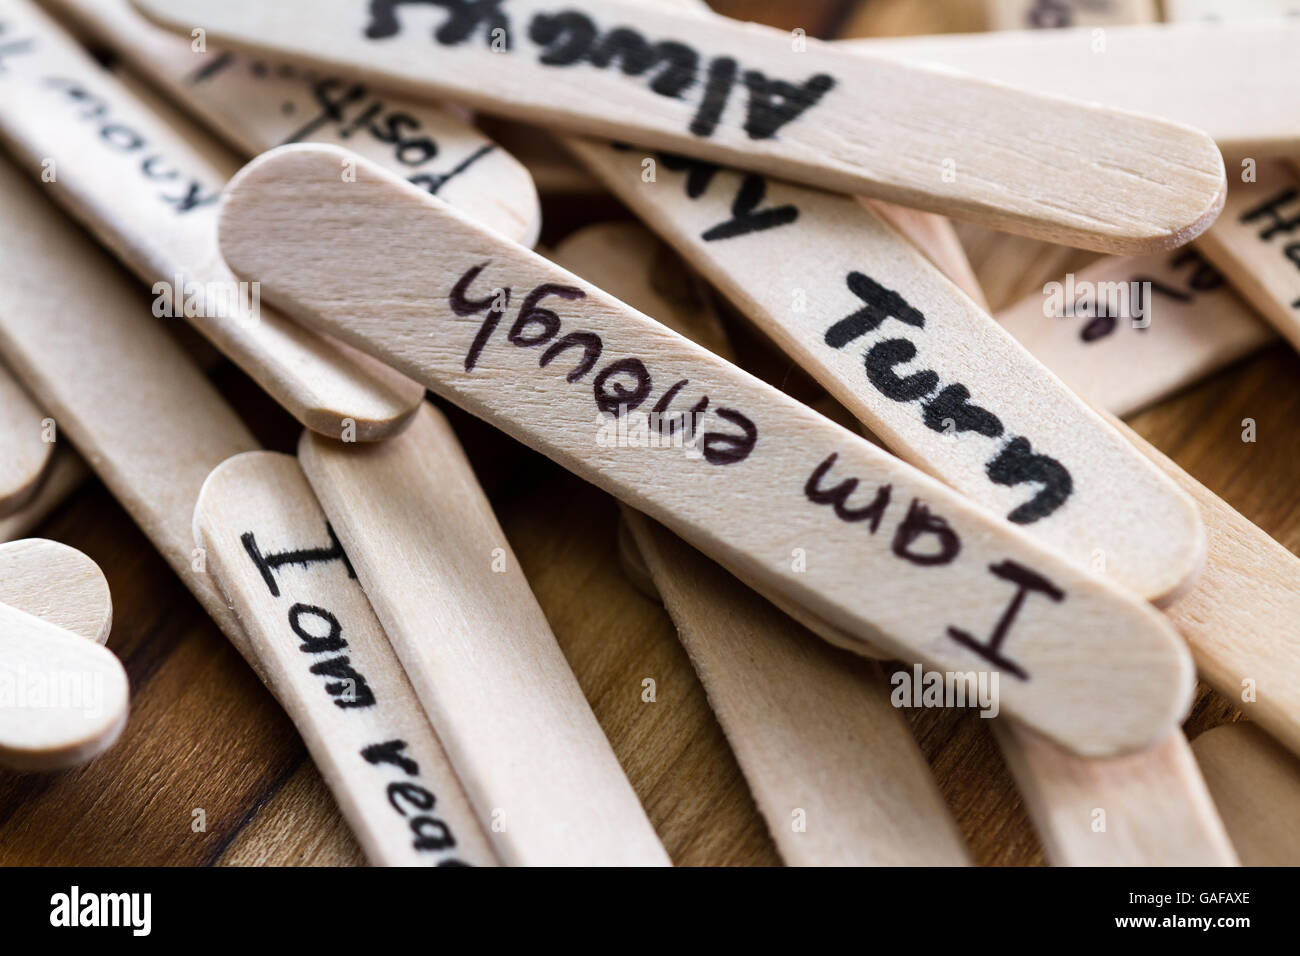 https://c8.alamy.com/comp/GAFAXE/close-up-of-a-hand-written-message-on-a-popsicle-stick-as-a-self-esteem-GAFAXE.jpg